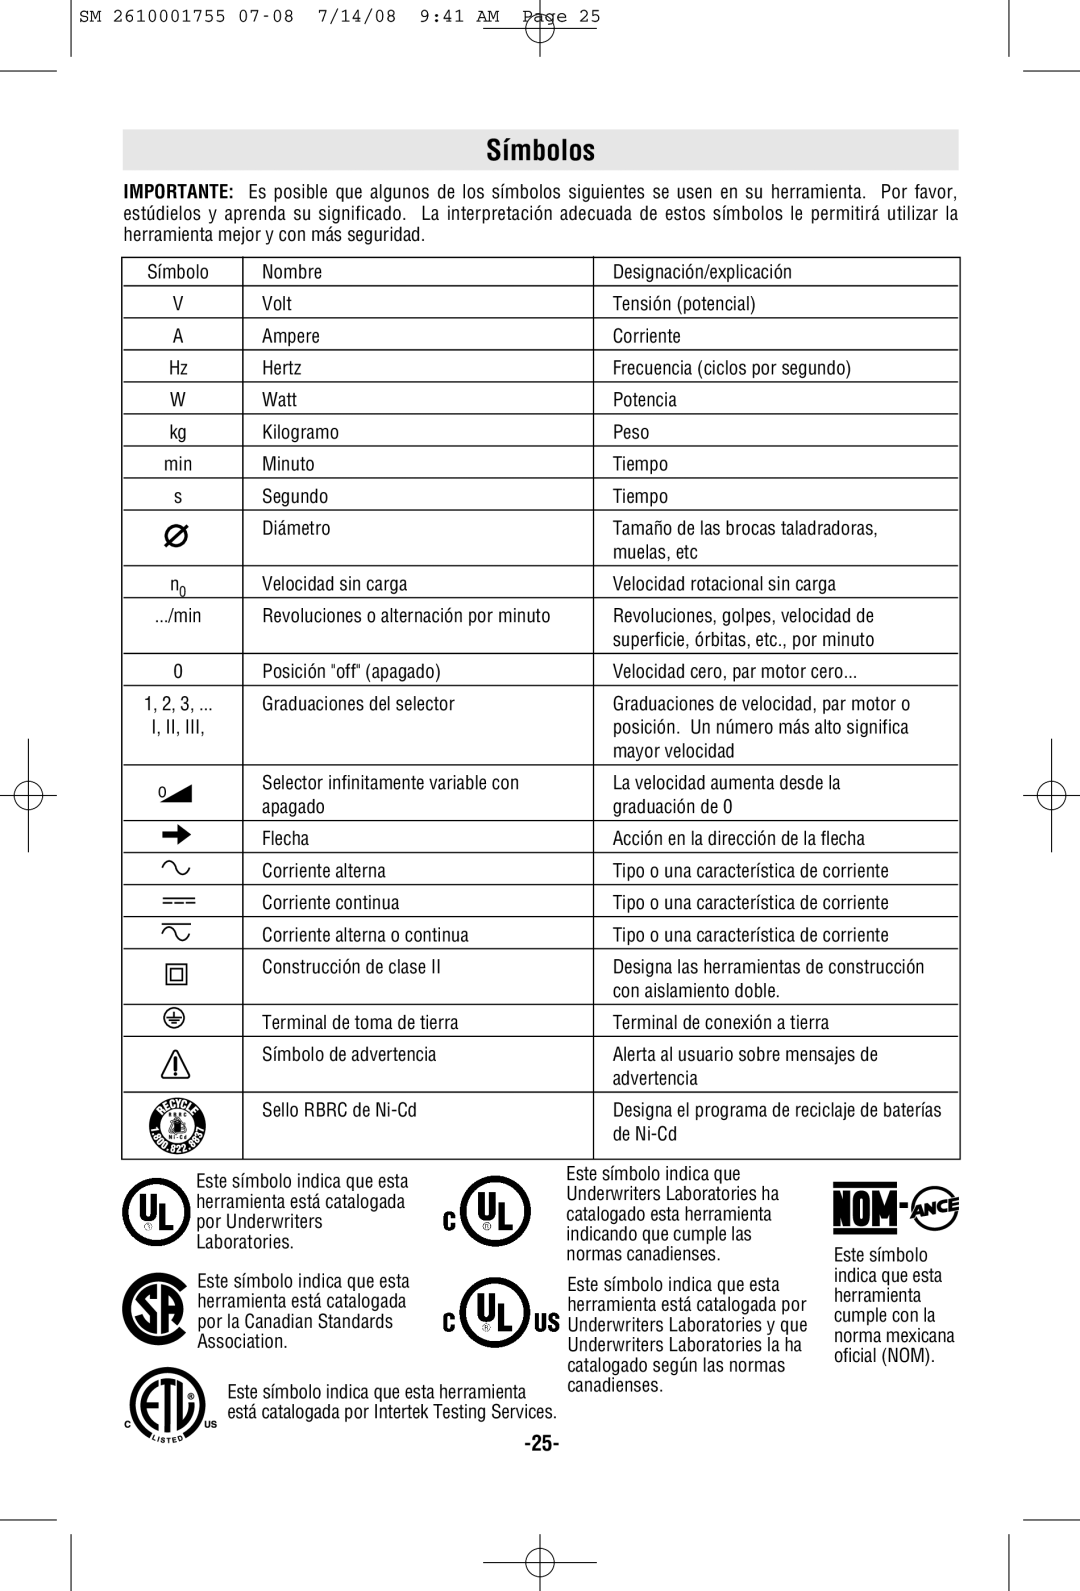 Skil 9215 manual Símbolos, Designa las herramientas de construcción, Underwriters Laboratories y que 